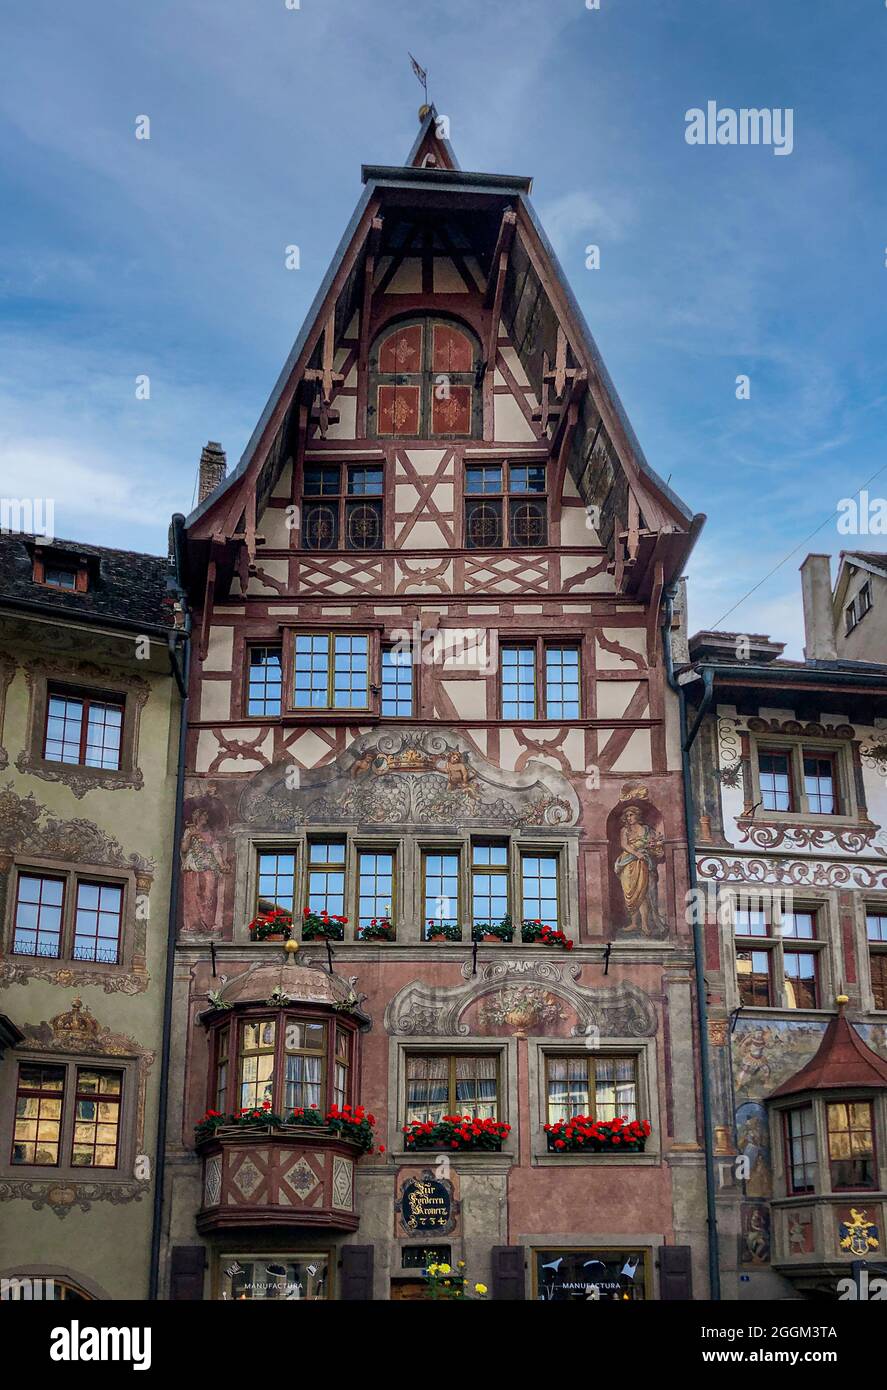 Alte Stadt Zentrum von Stein am Rhein Dorf mit bunten alten Häusern, Kanton  Schaffhausen, Schweiz Stockfotografie - Alamy